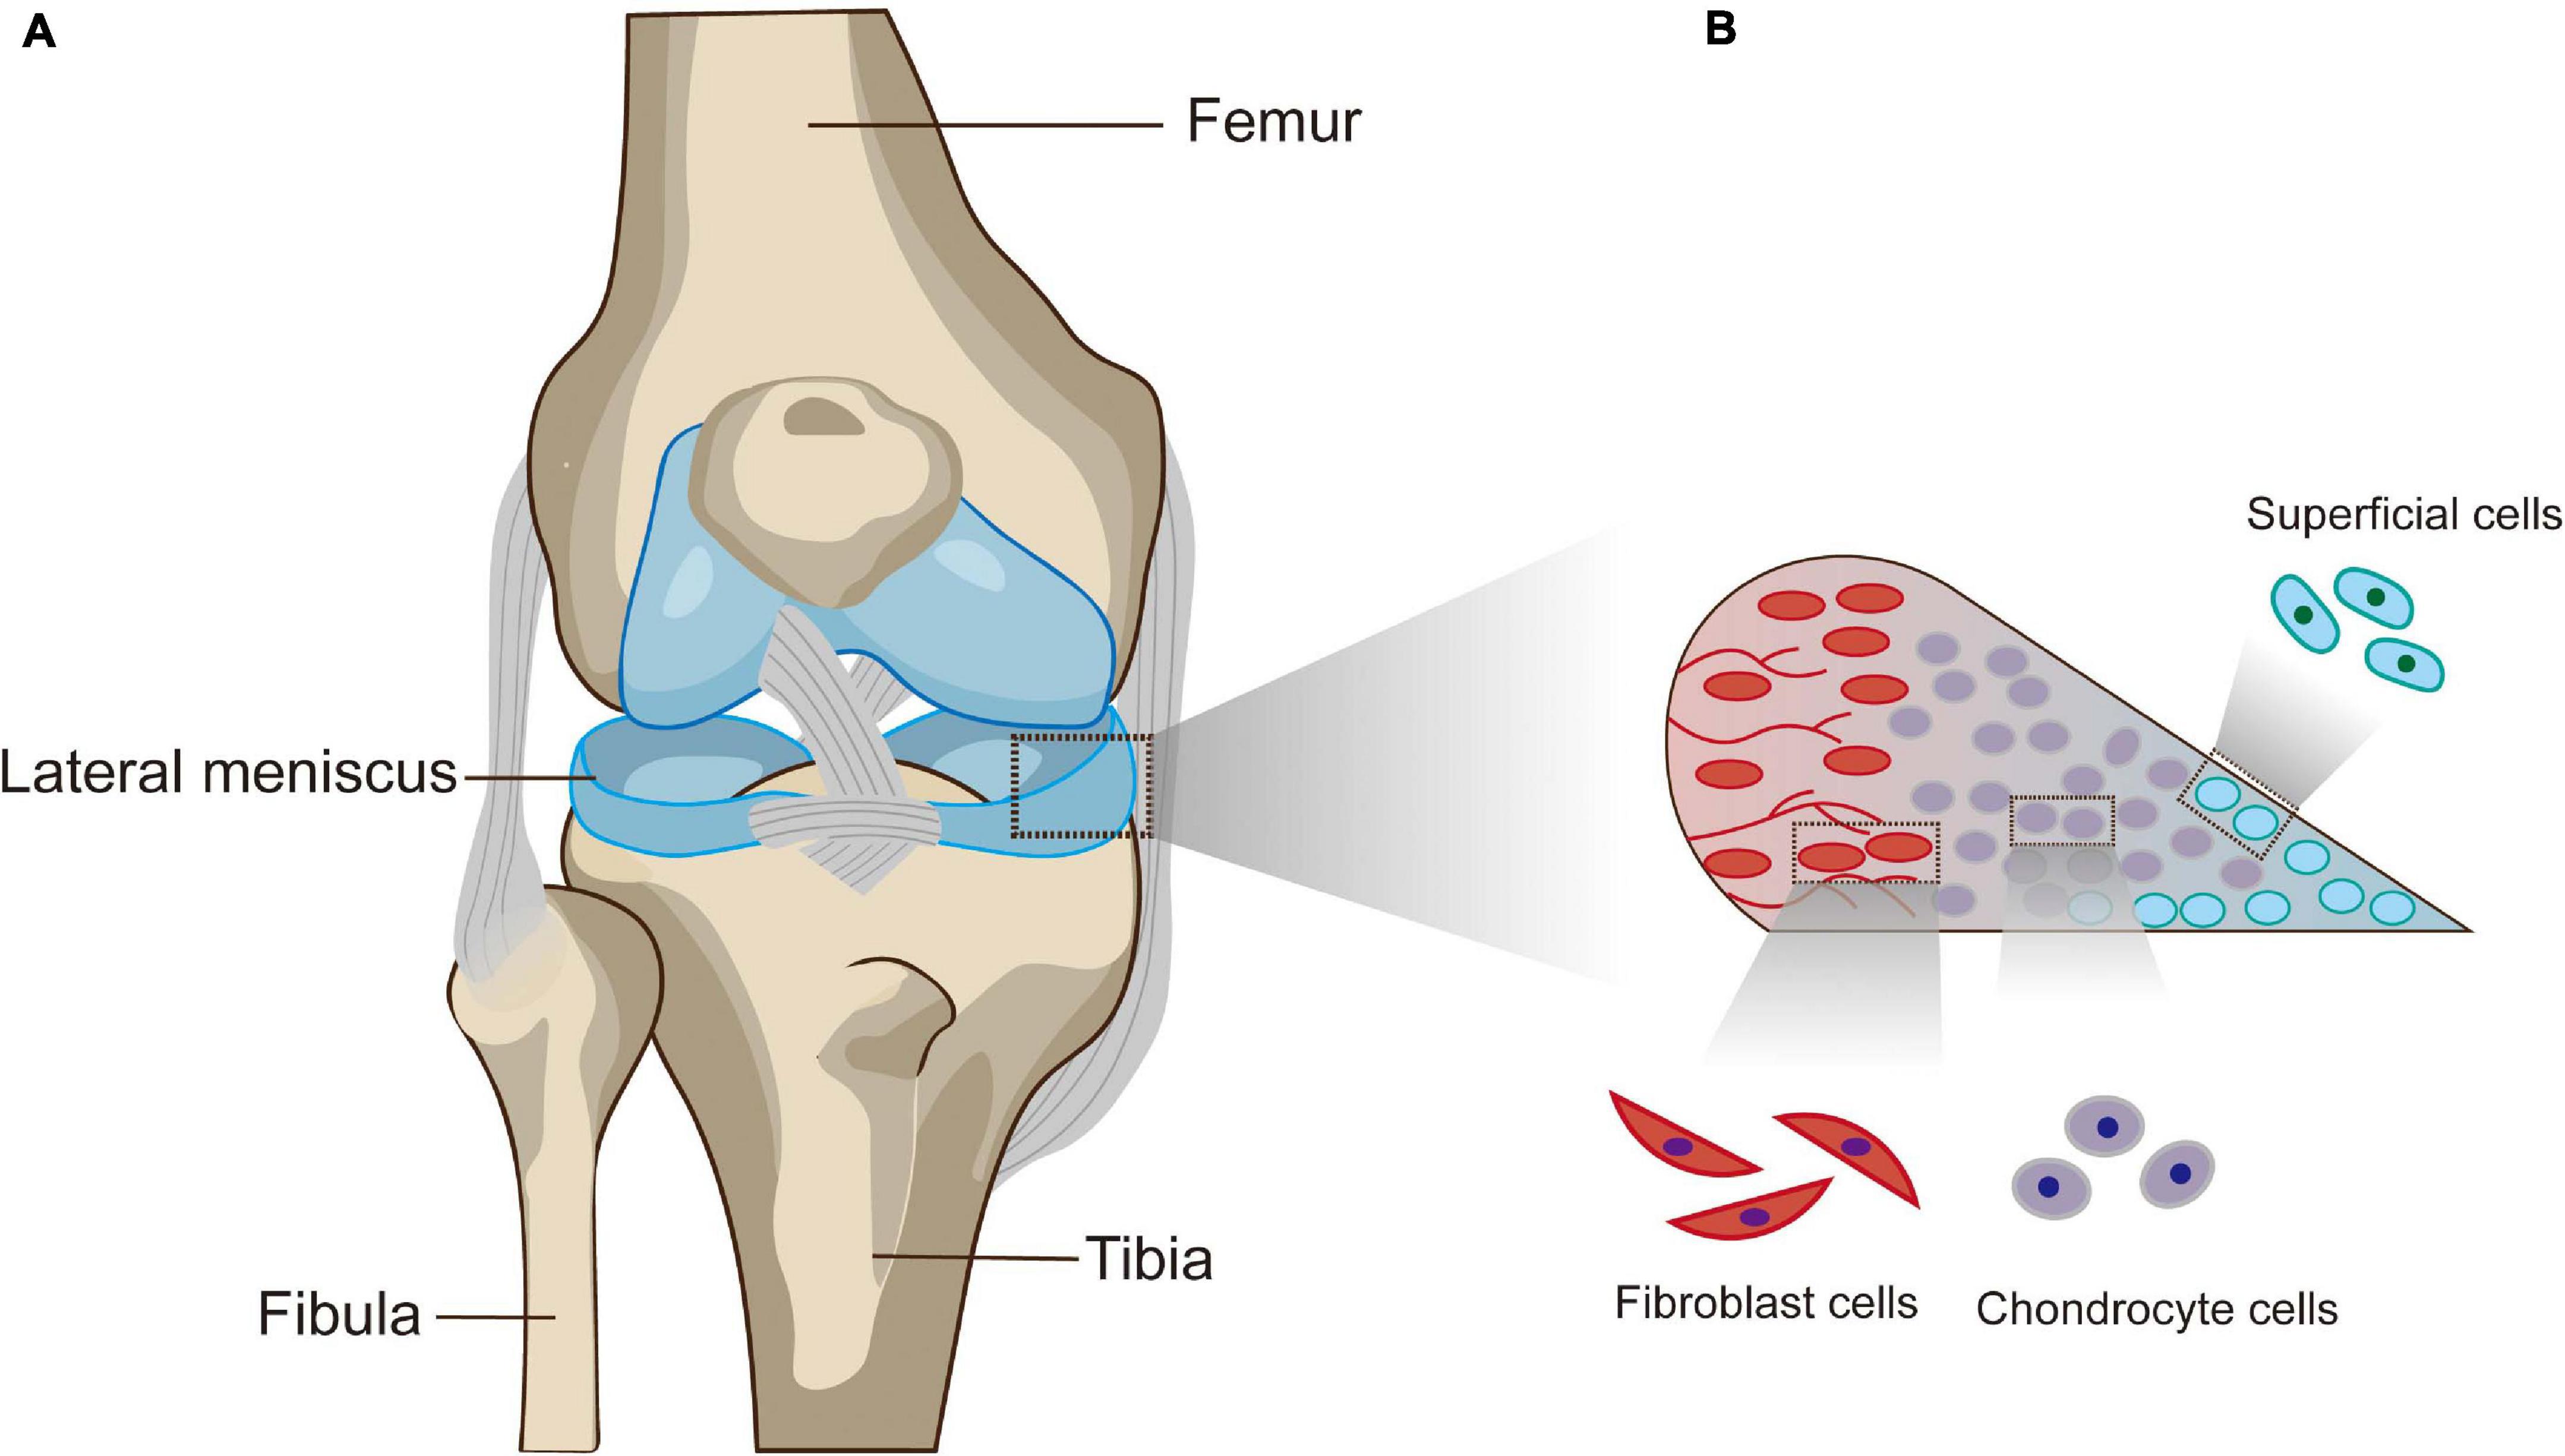 Will a Knee Brace Help a Torn Meniscus? – Dunn Medical